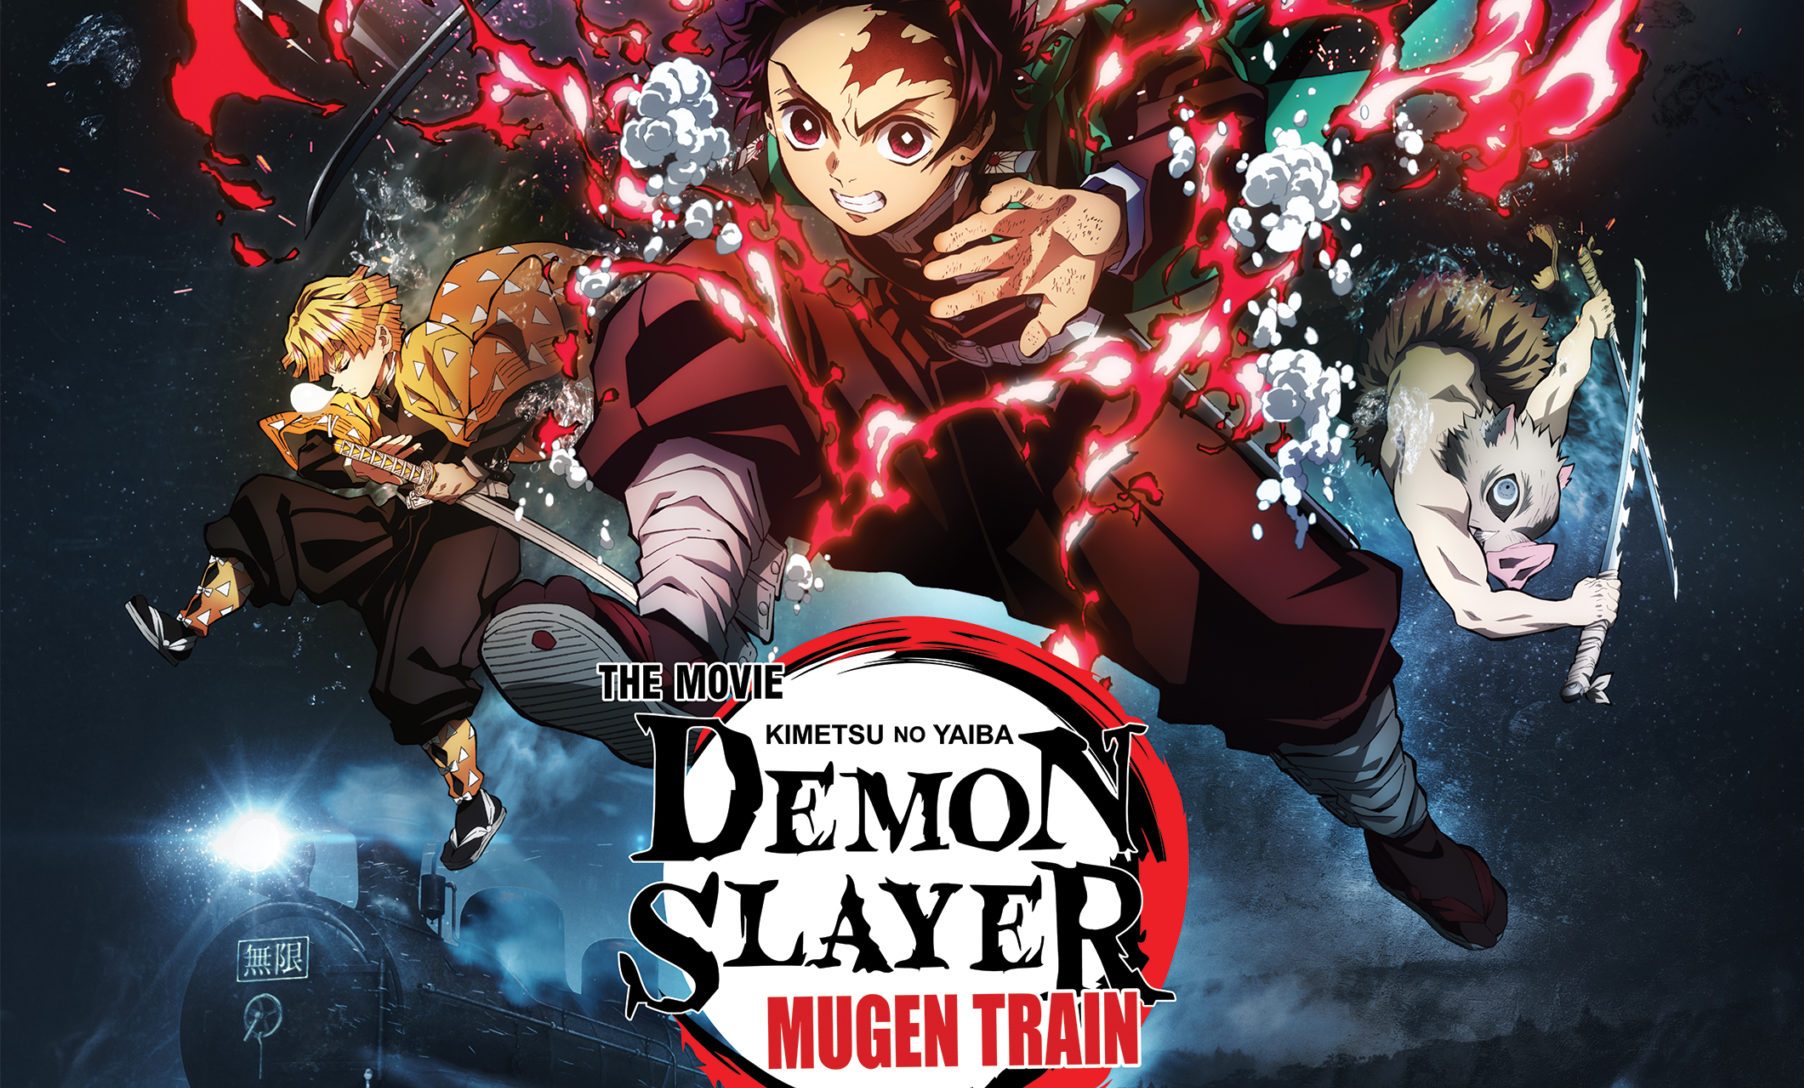 SAIU O FILME COMPLETO LEGENDADO PT/BR - Demon Slayer - Kimetsu no Yaiba -  The Movie: Mugen Train HD 